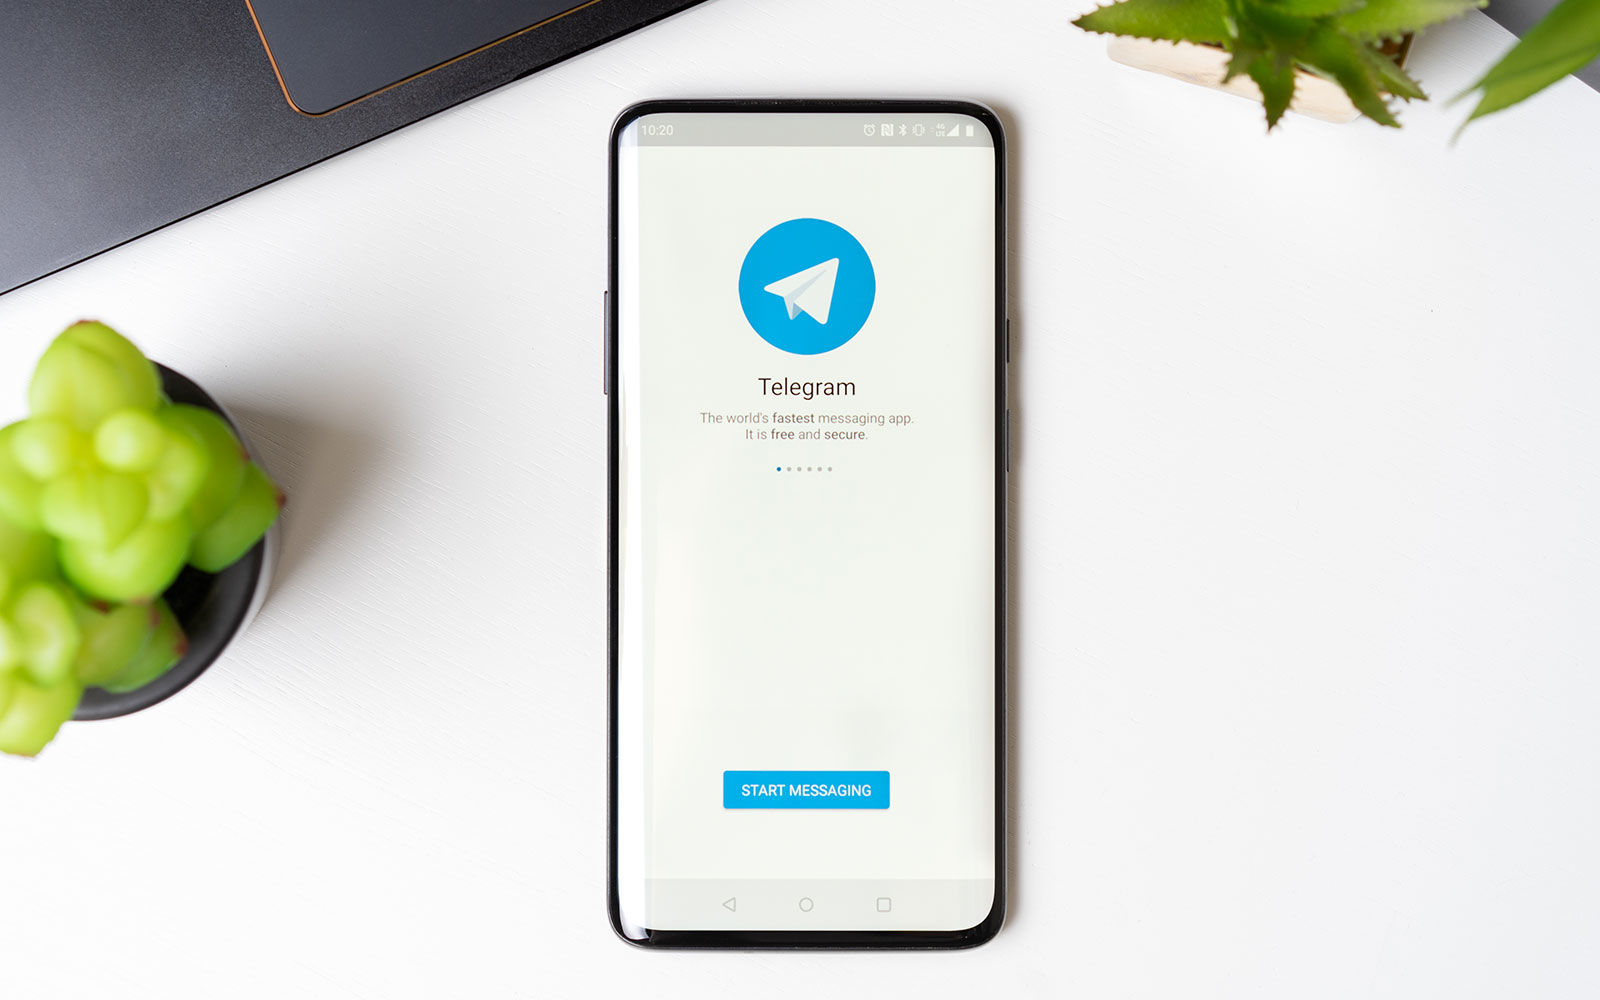 Telegram startet eigene Werbeplattform: Verspricht unaufdringliche Werbung ohne Verwendung persönlicher Daten